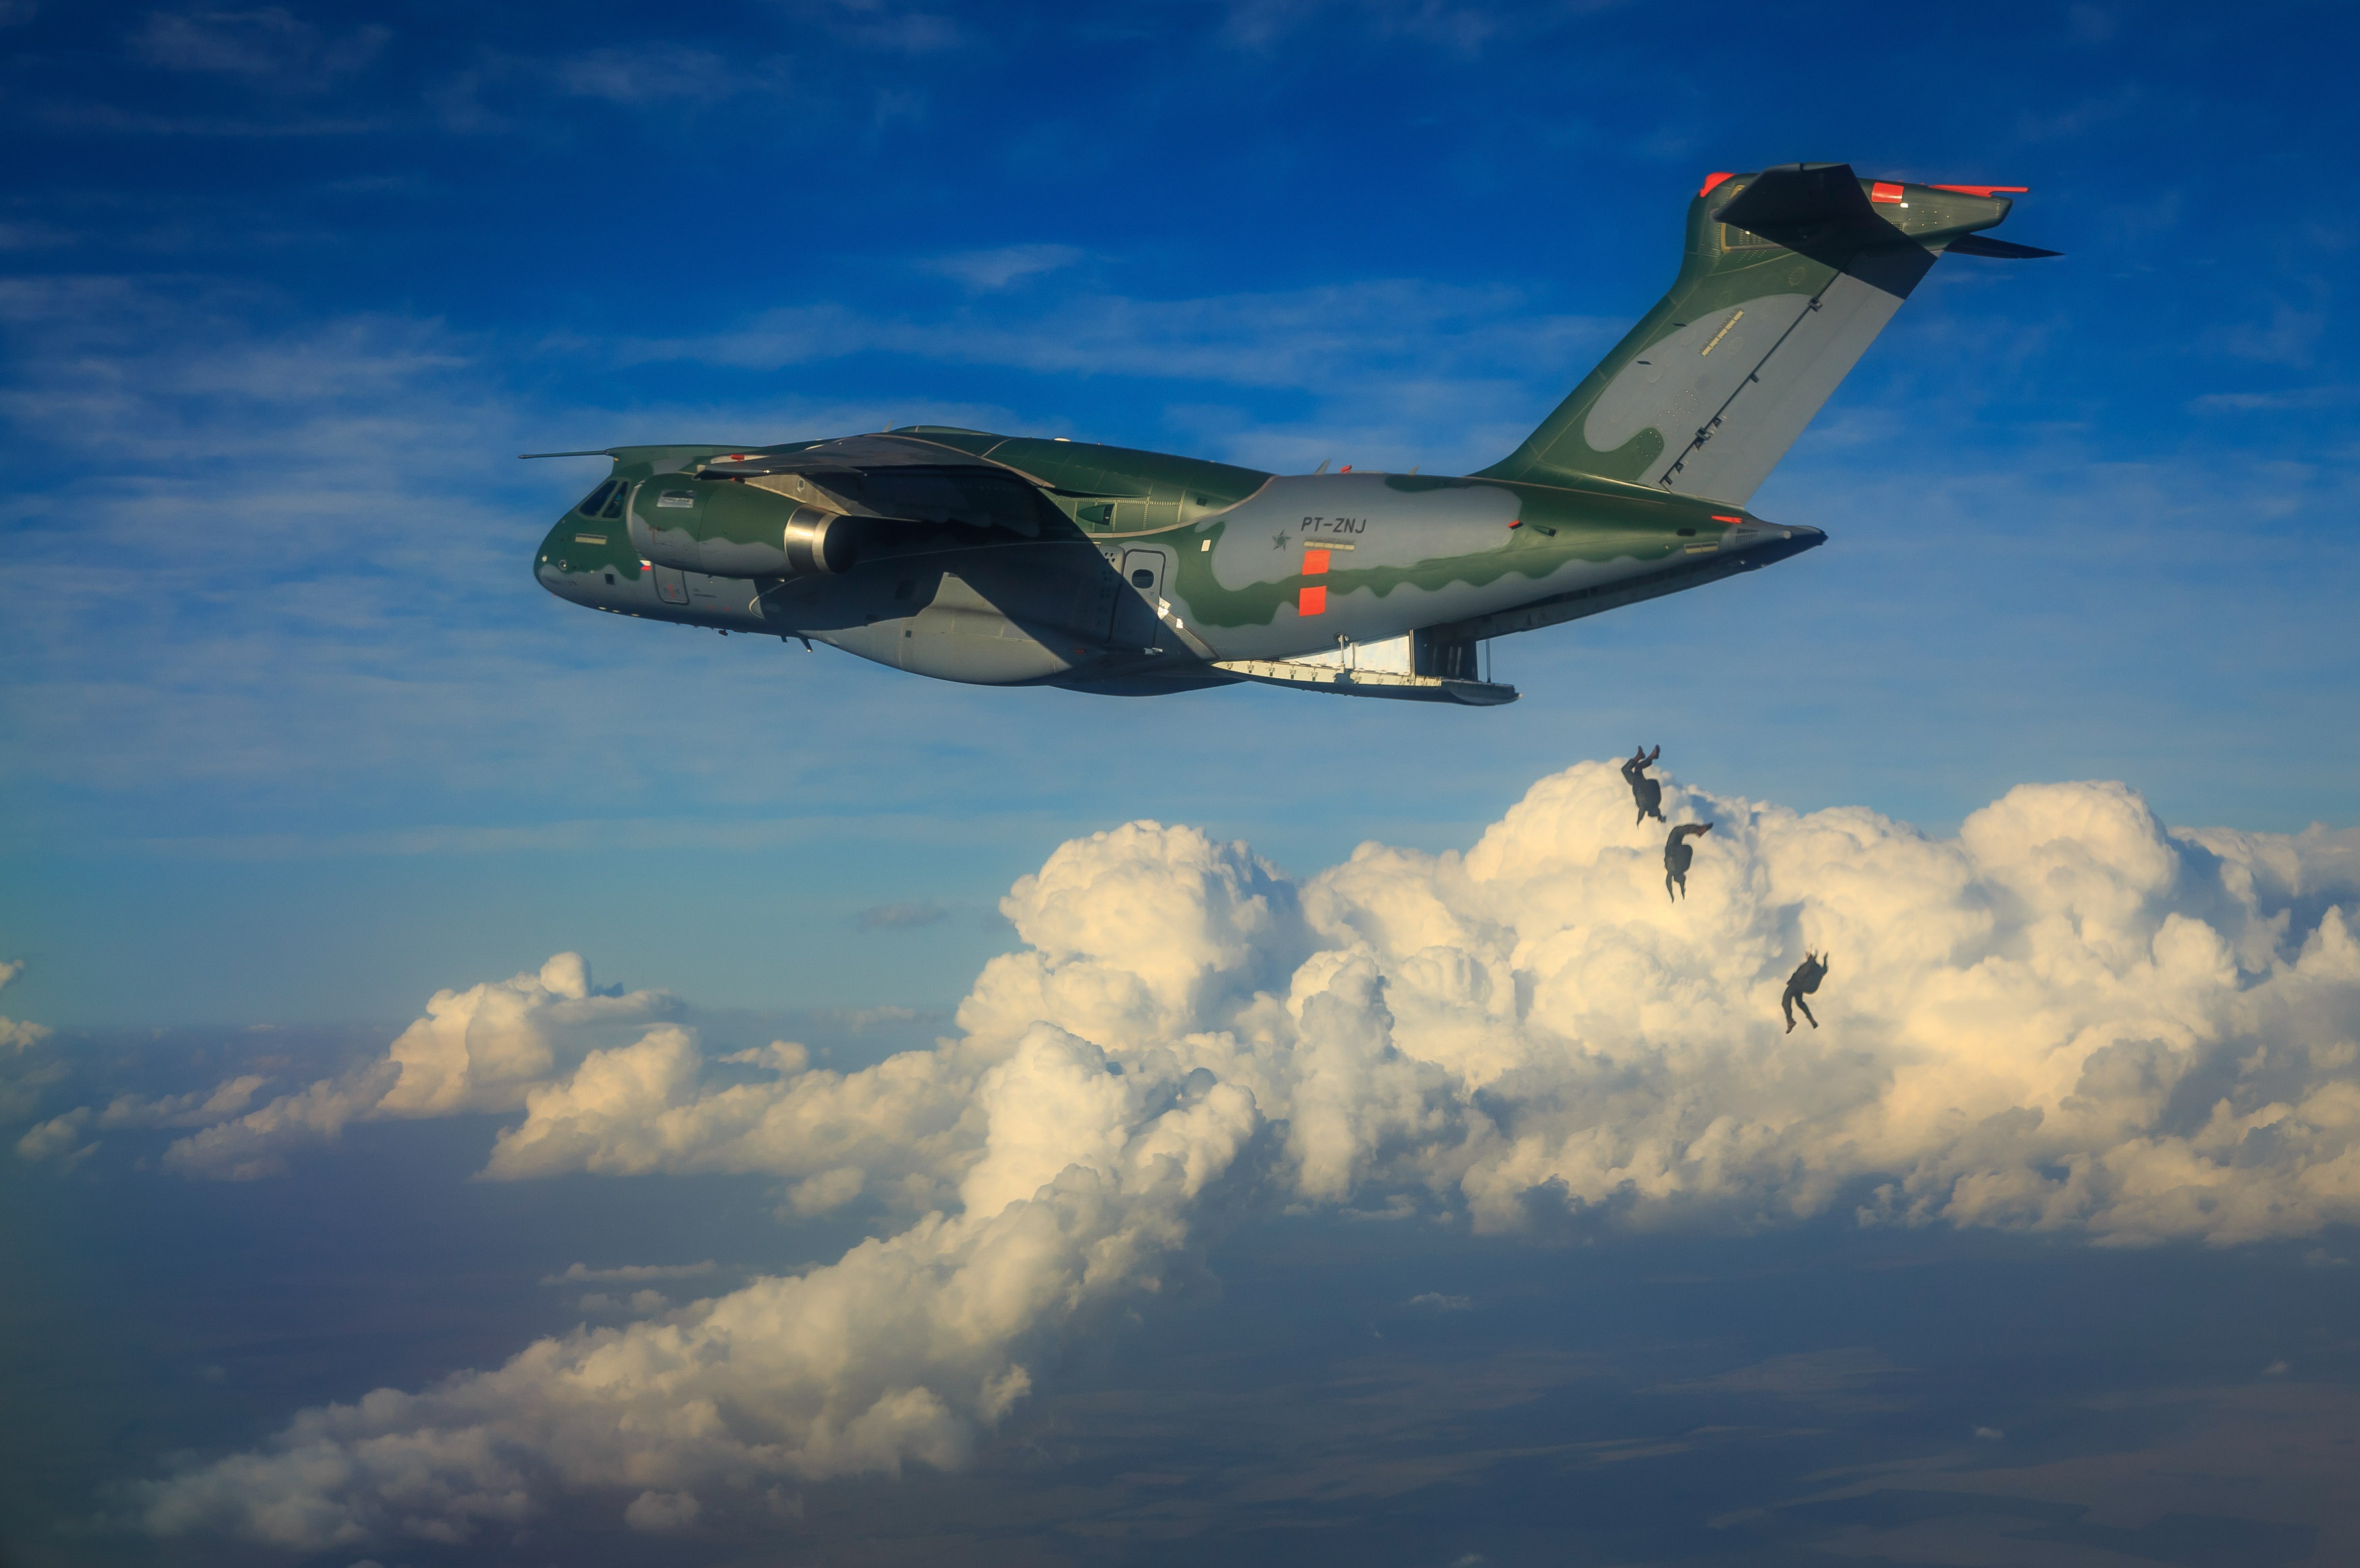 military, embraer kc 390, aircraft, cloud, parachuting, transport aircraft, warplane